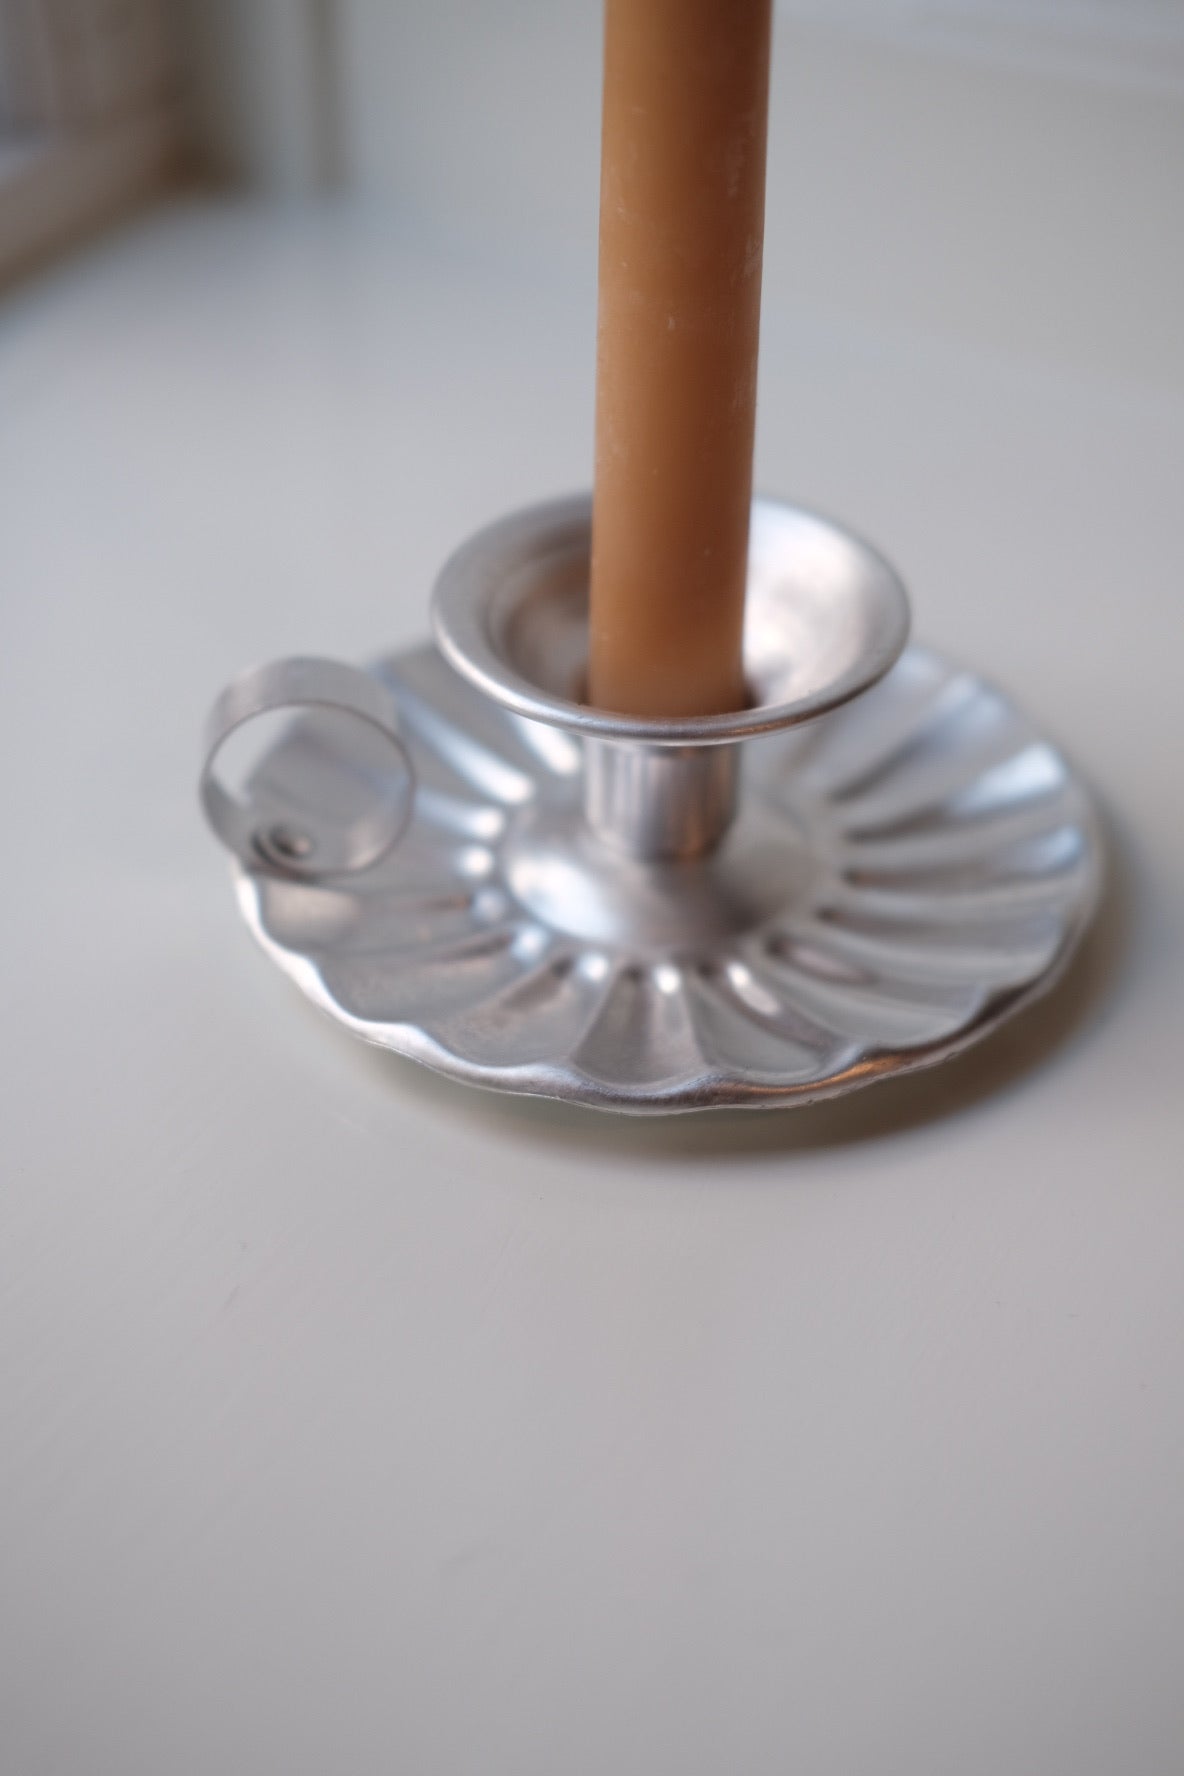 Candlestick • Aluminum • Chamber candlestick